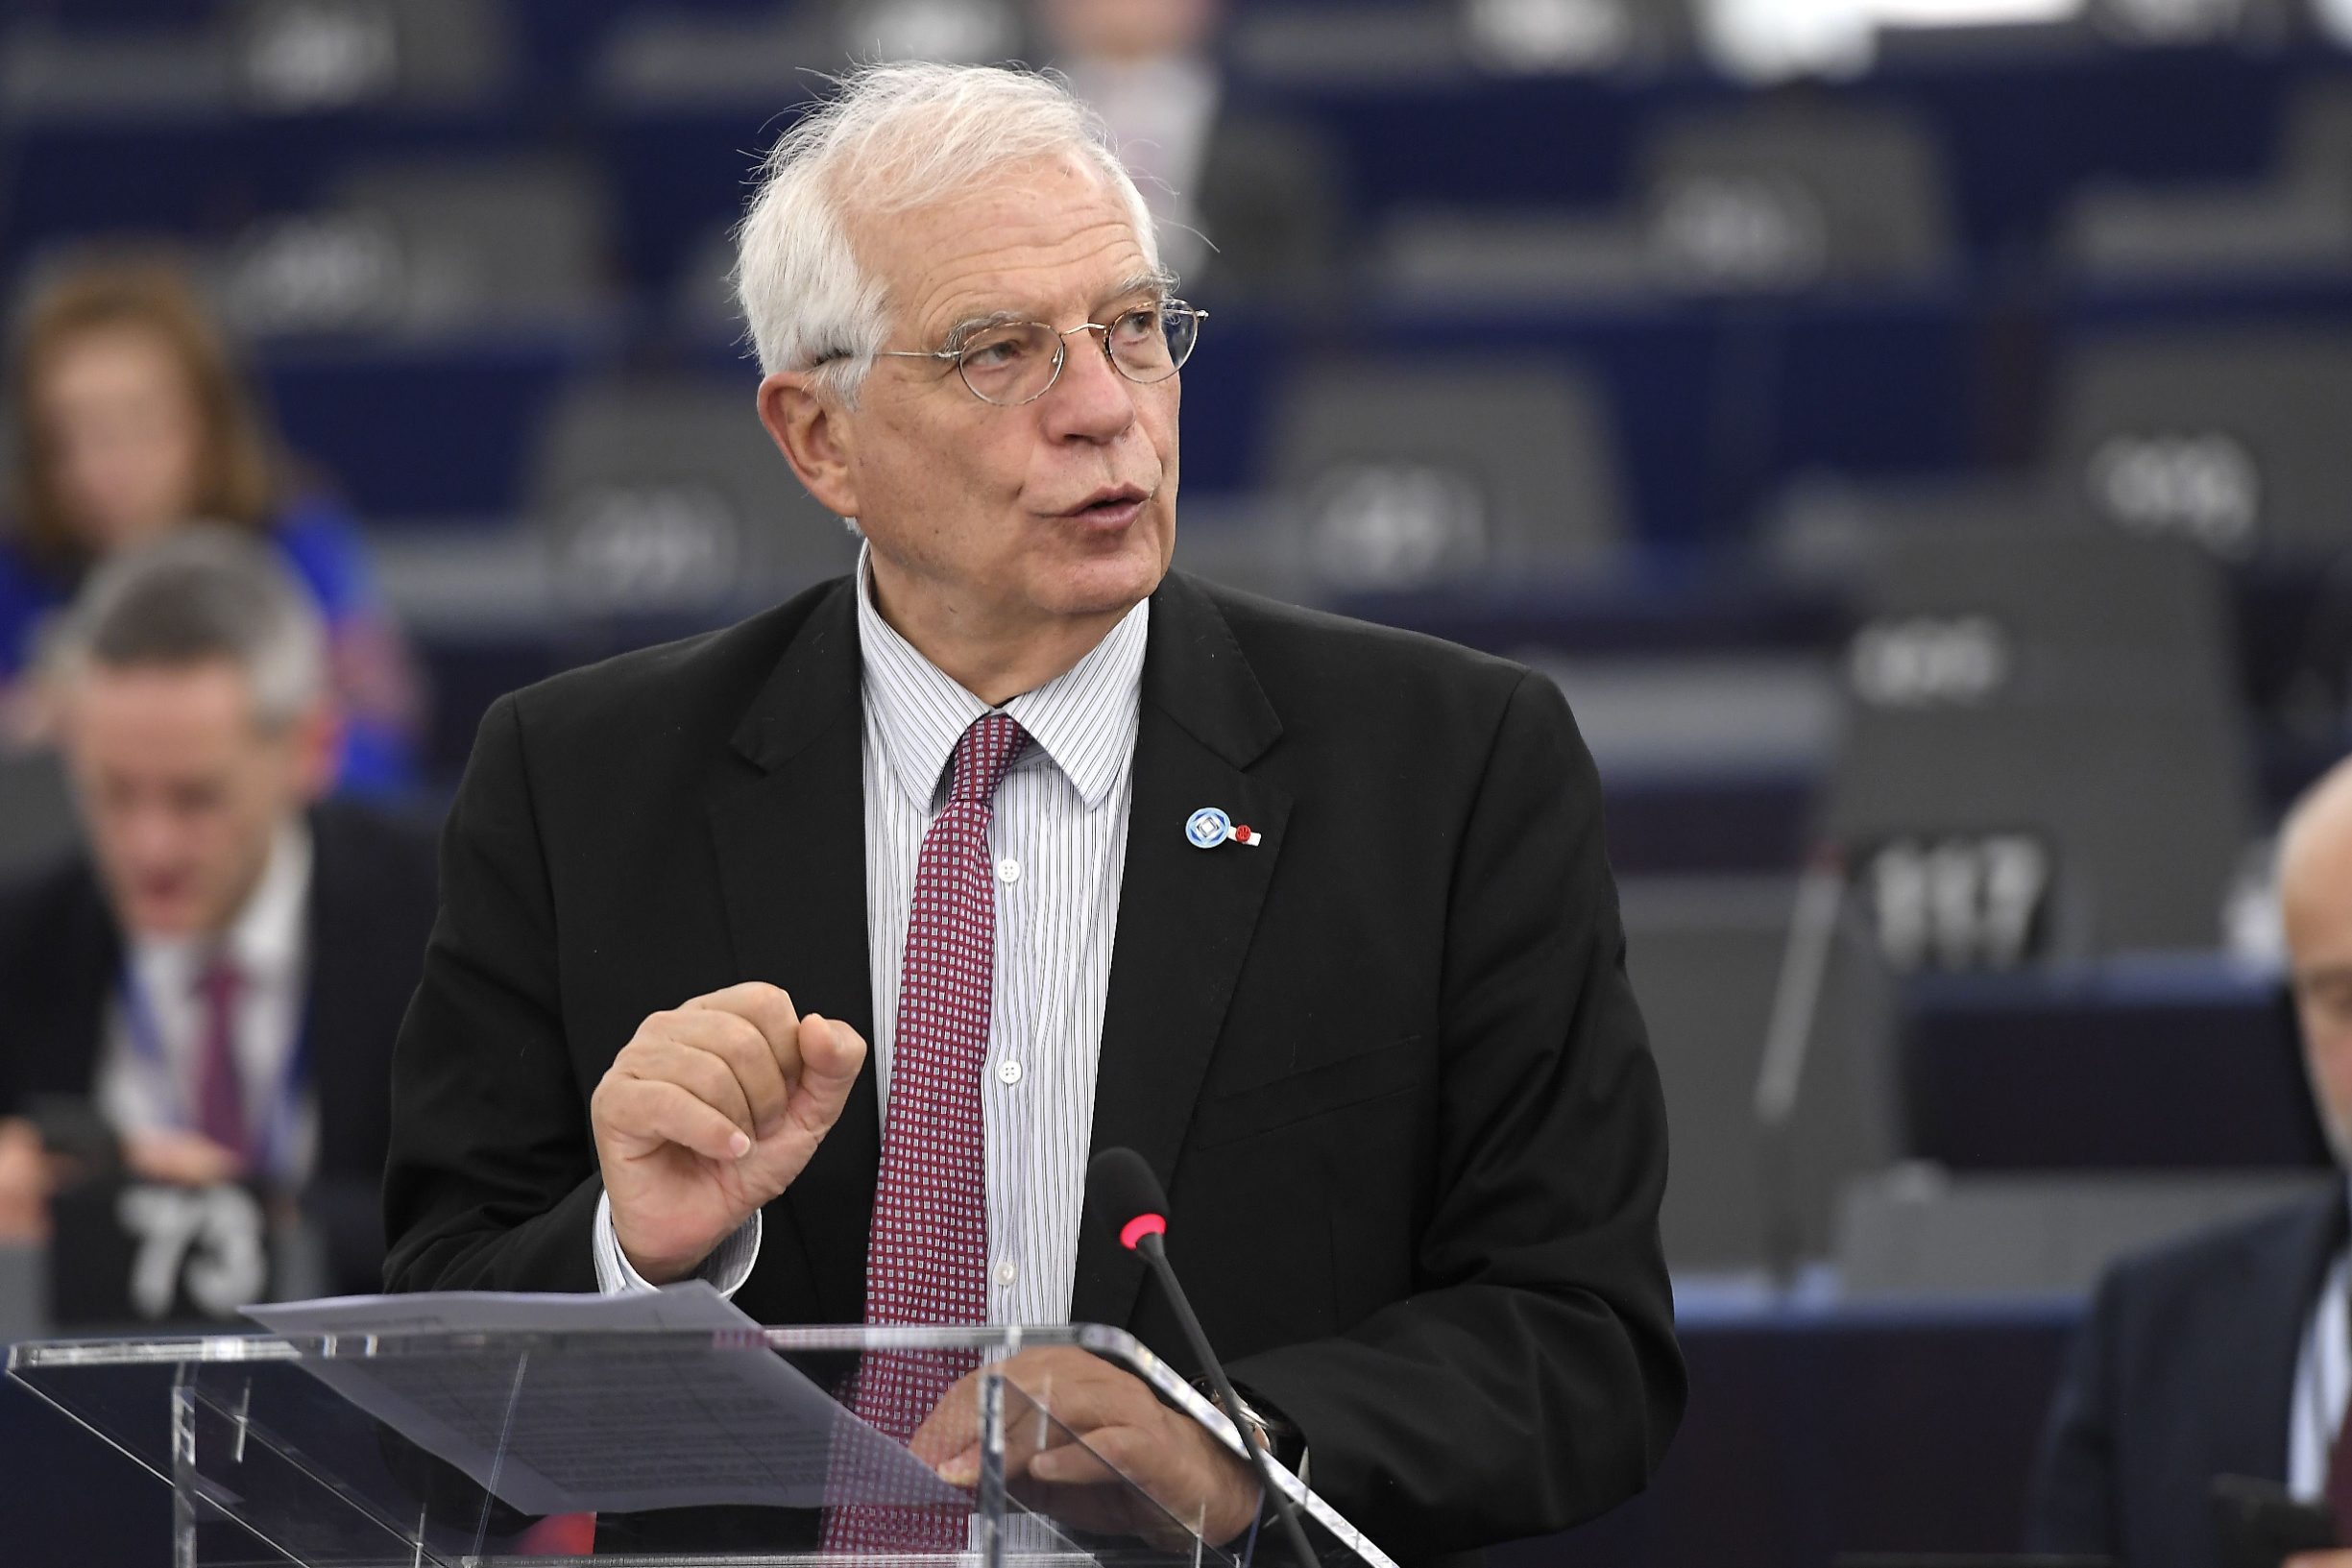 Visoki predstavnik Josep Borrell pred Europskim parlamentom u Strasbourgu 